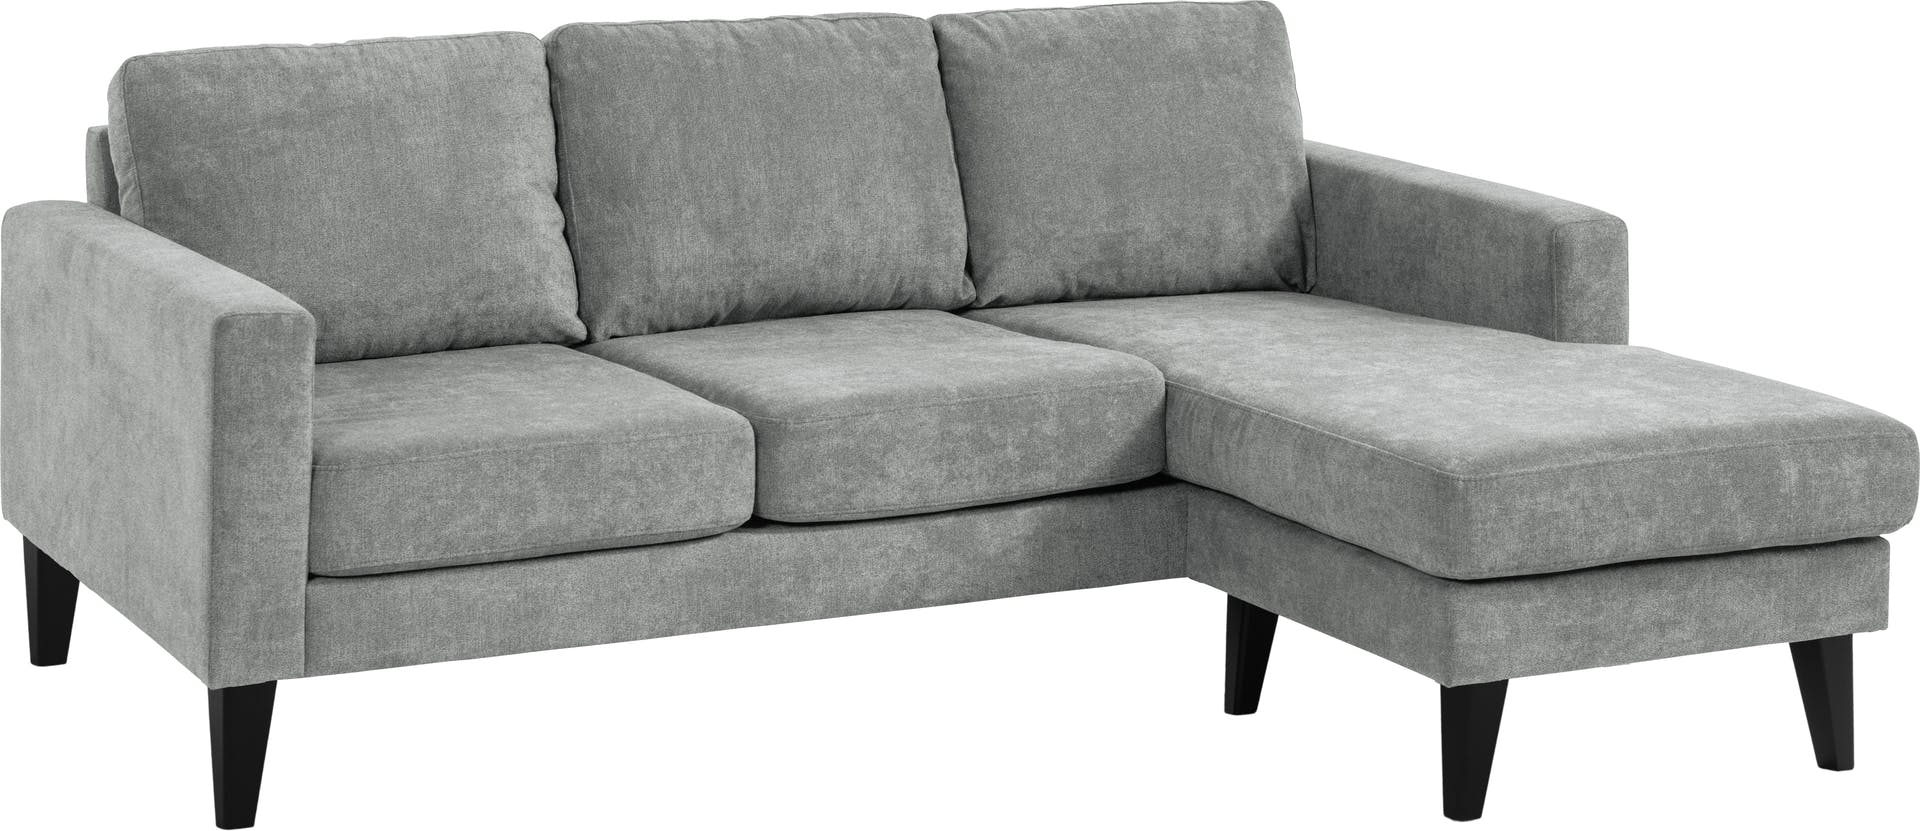 Diana 3-seter sofa  